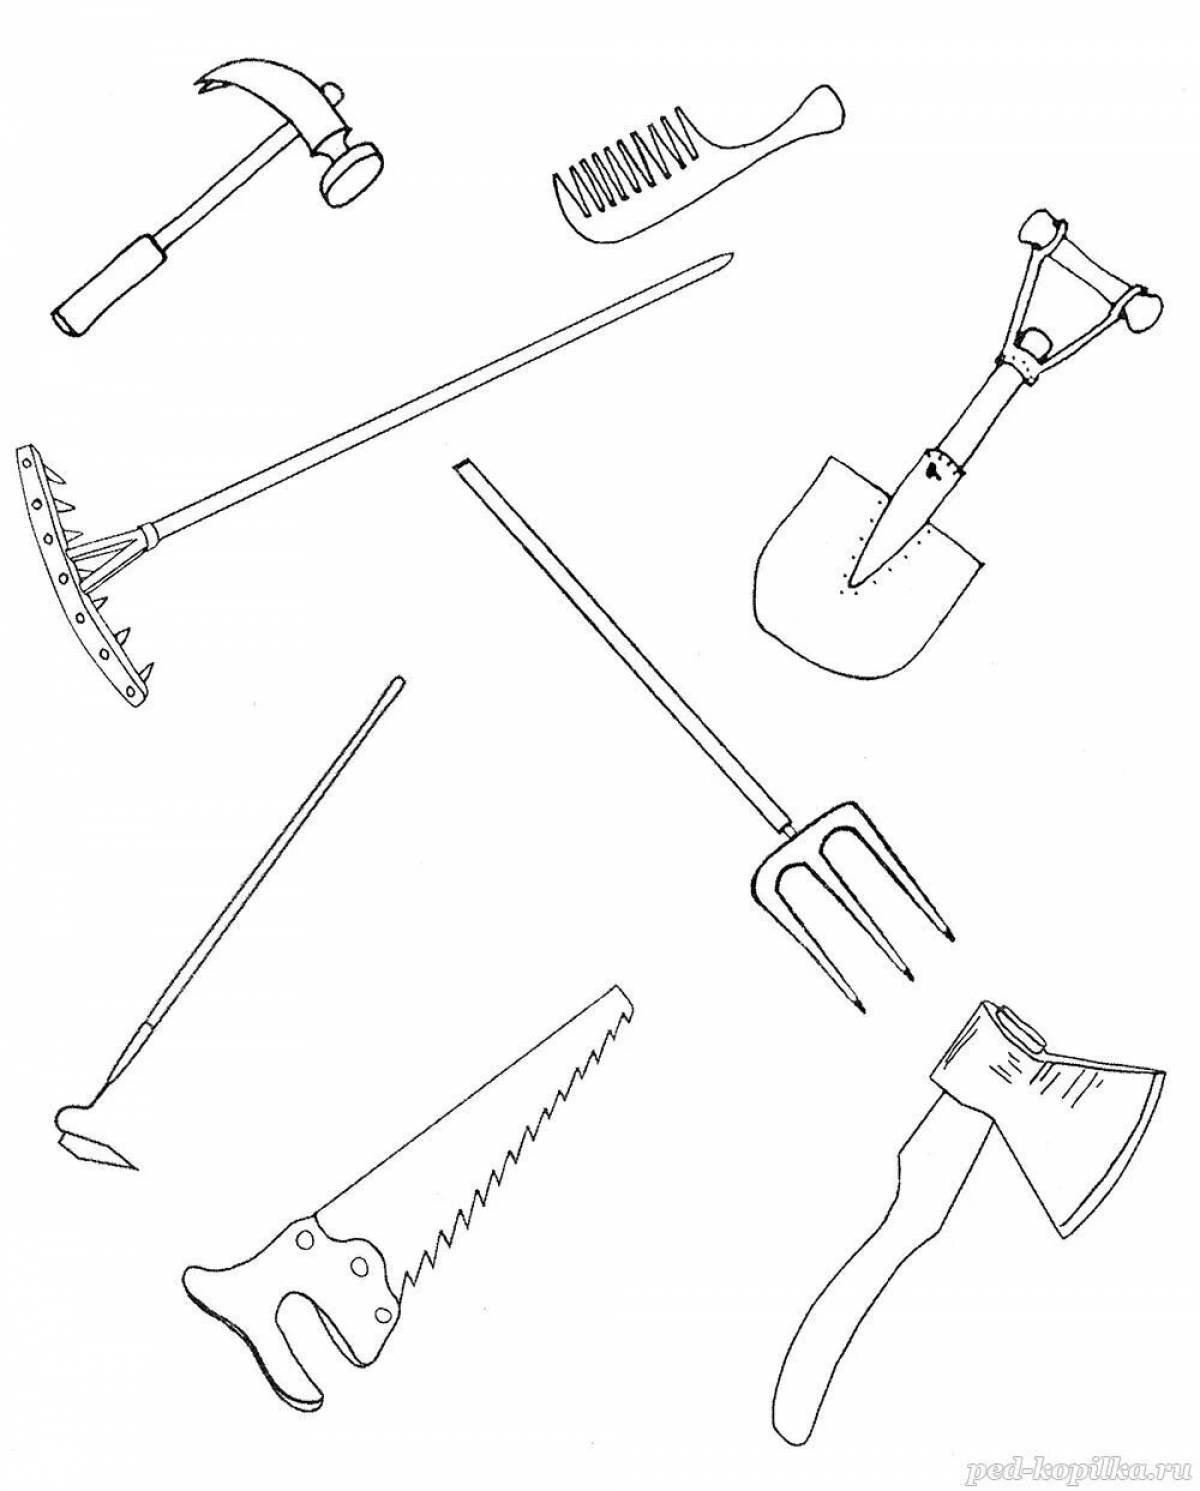 Tools tools #5